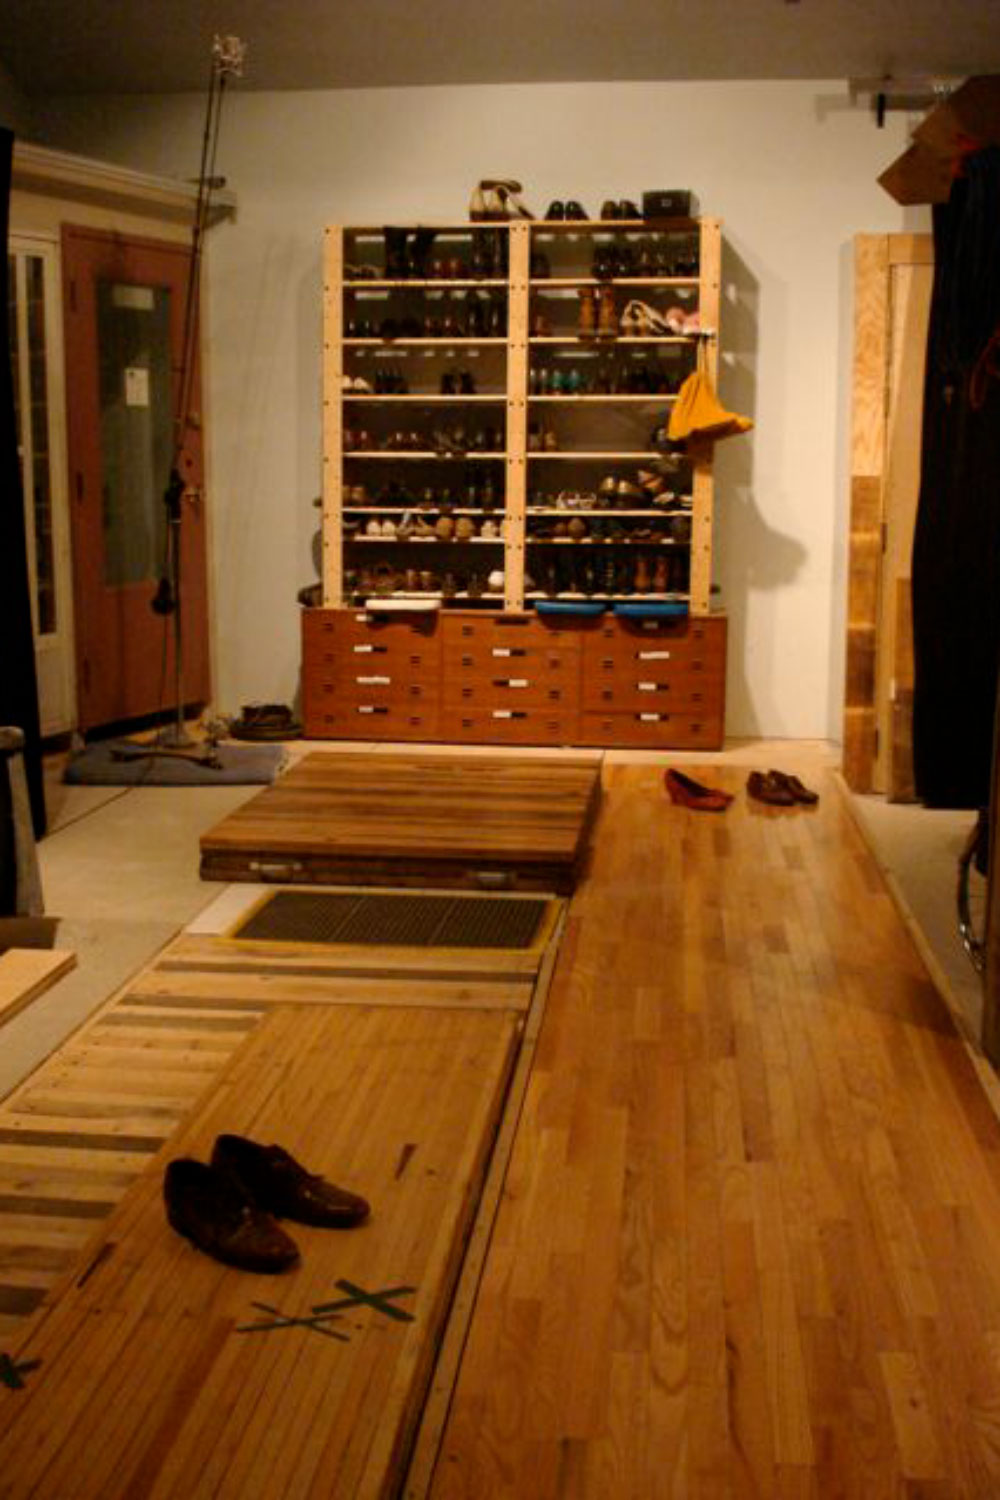 フォーリースタジオには色々な素材の床やドア、窓なども。